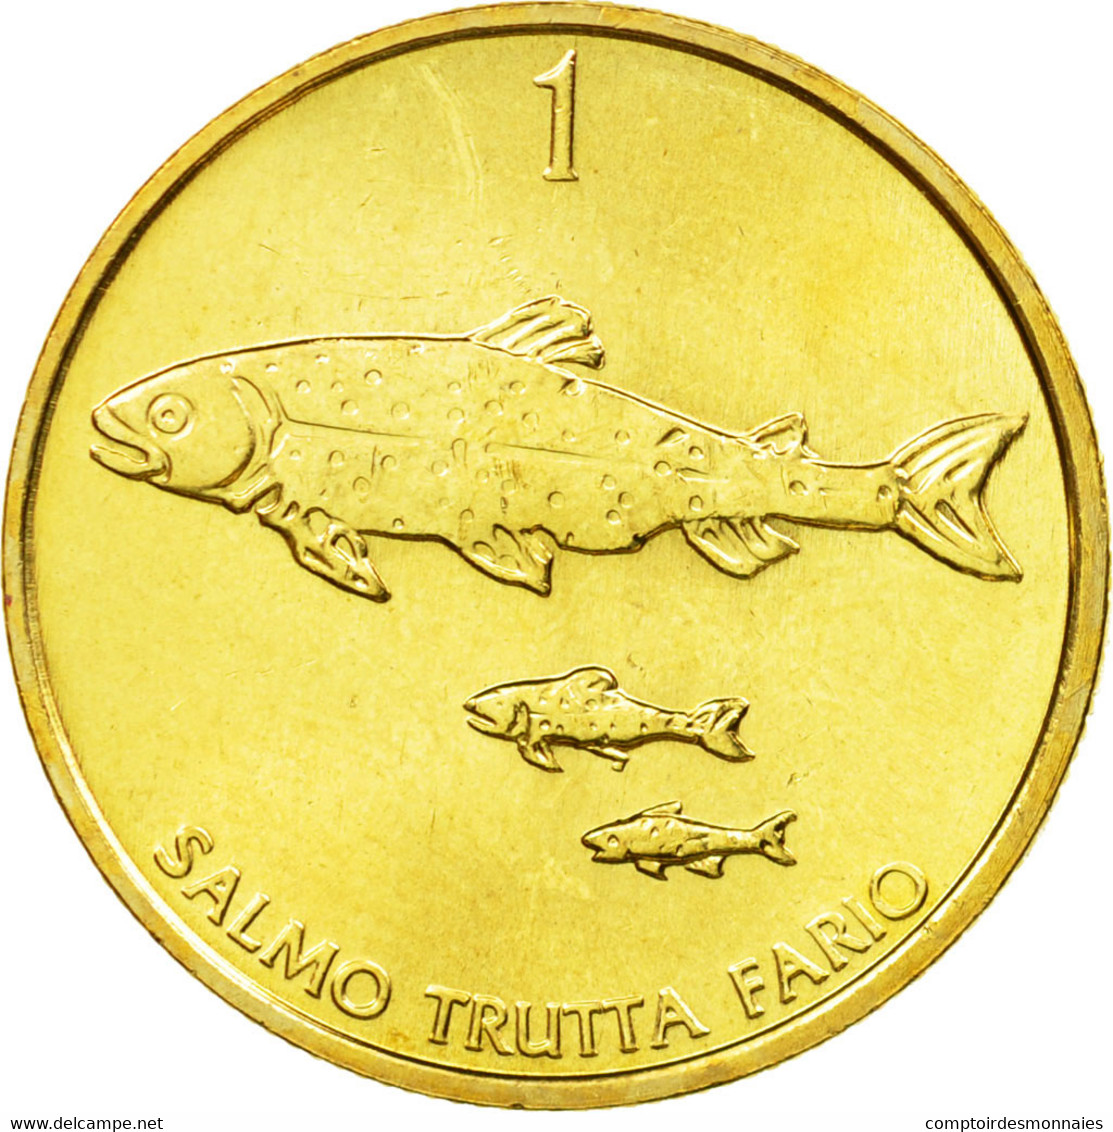 Monnaie, Slovénie, Tolar, 2000, SUP, Nickel-brass, KM:4 - Slovénie